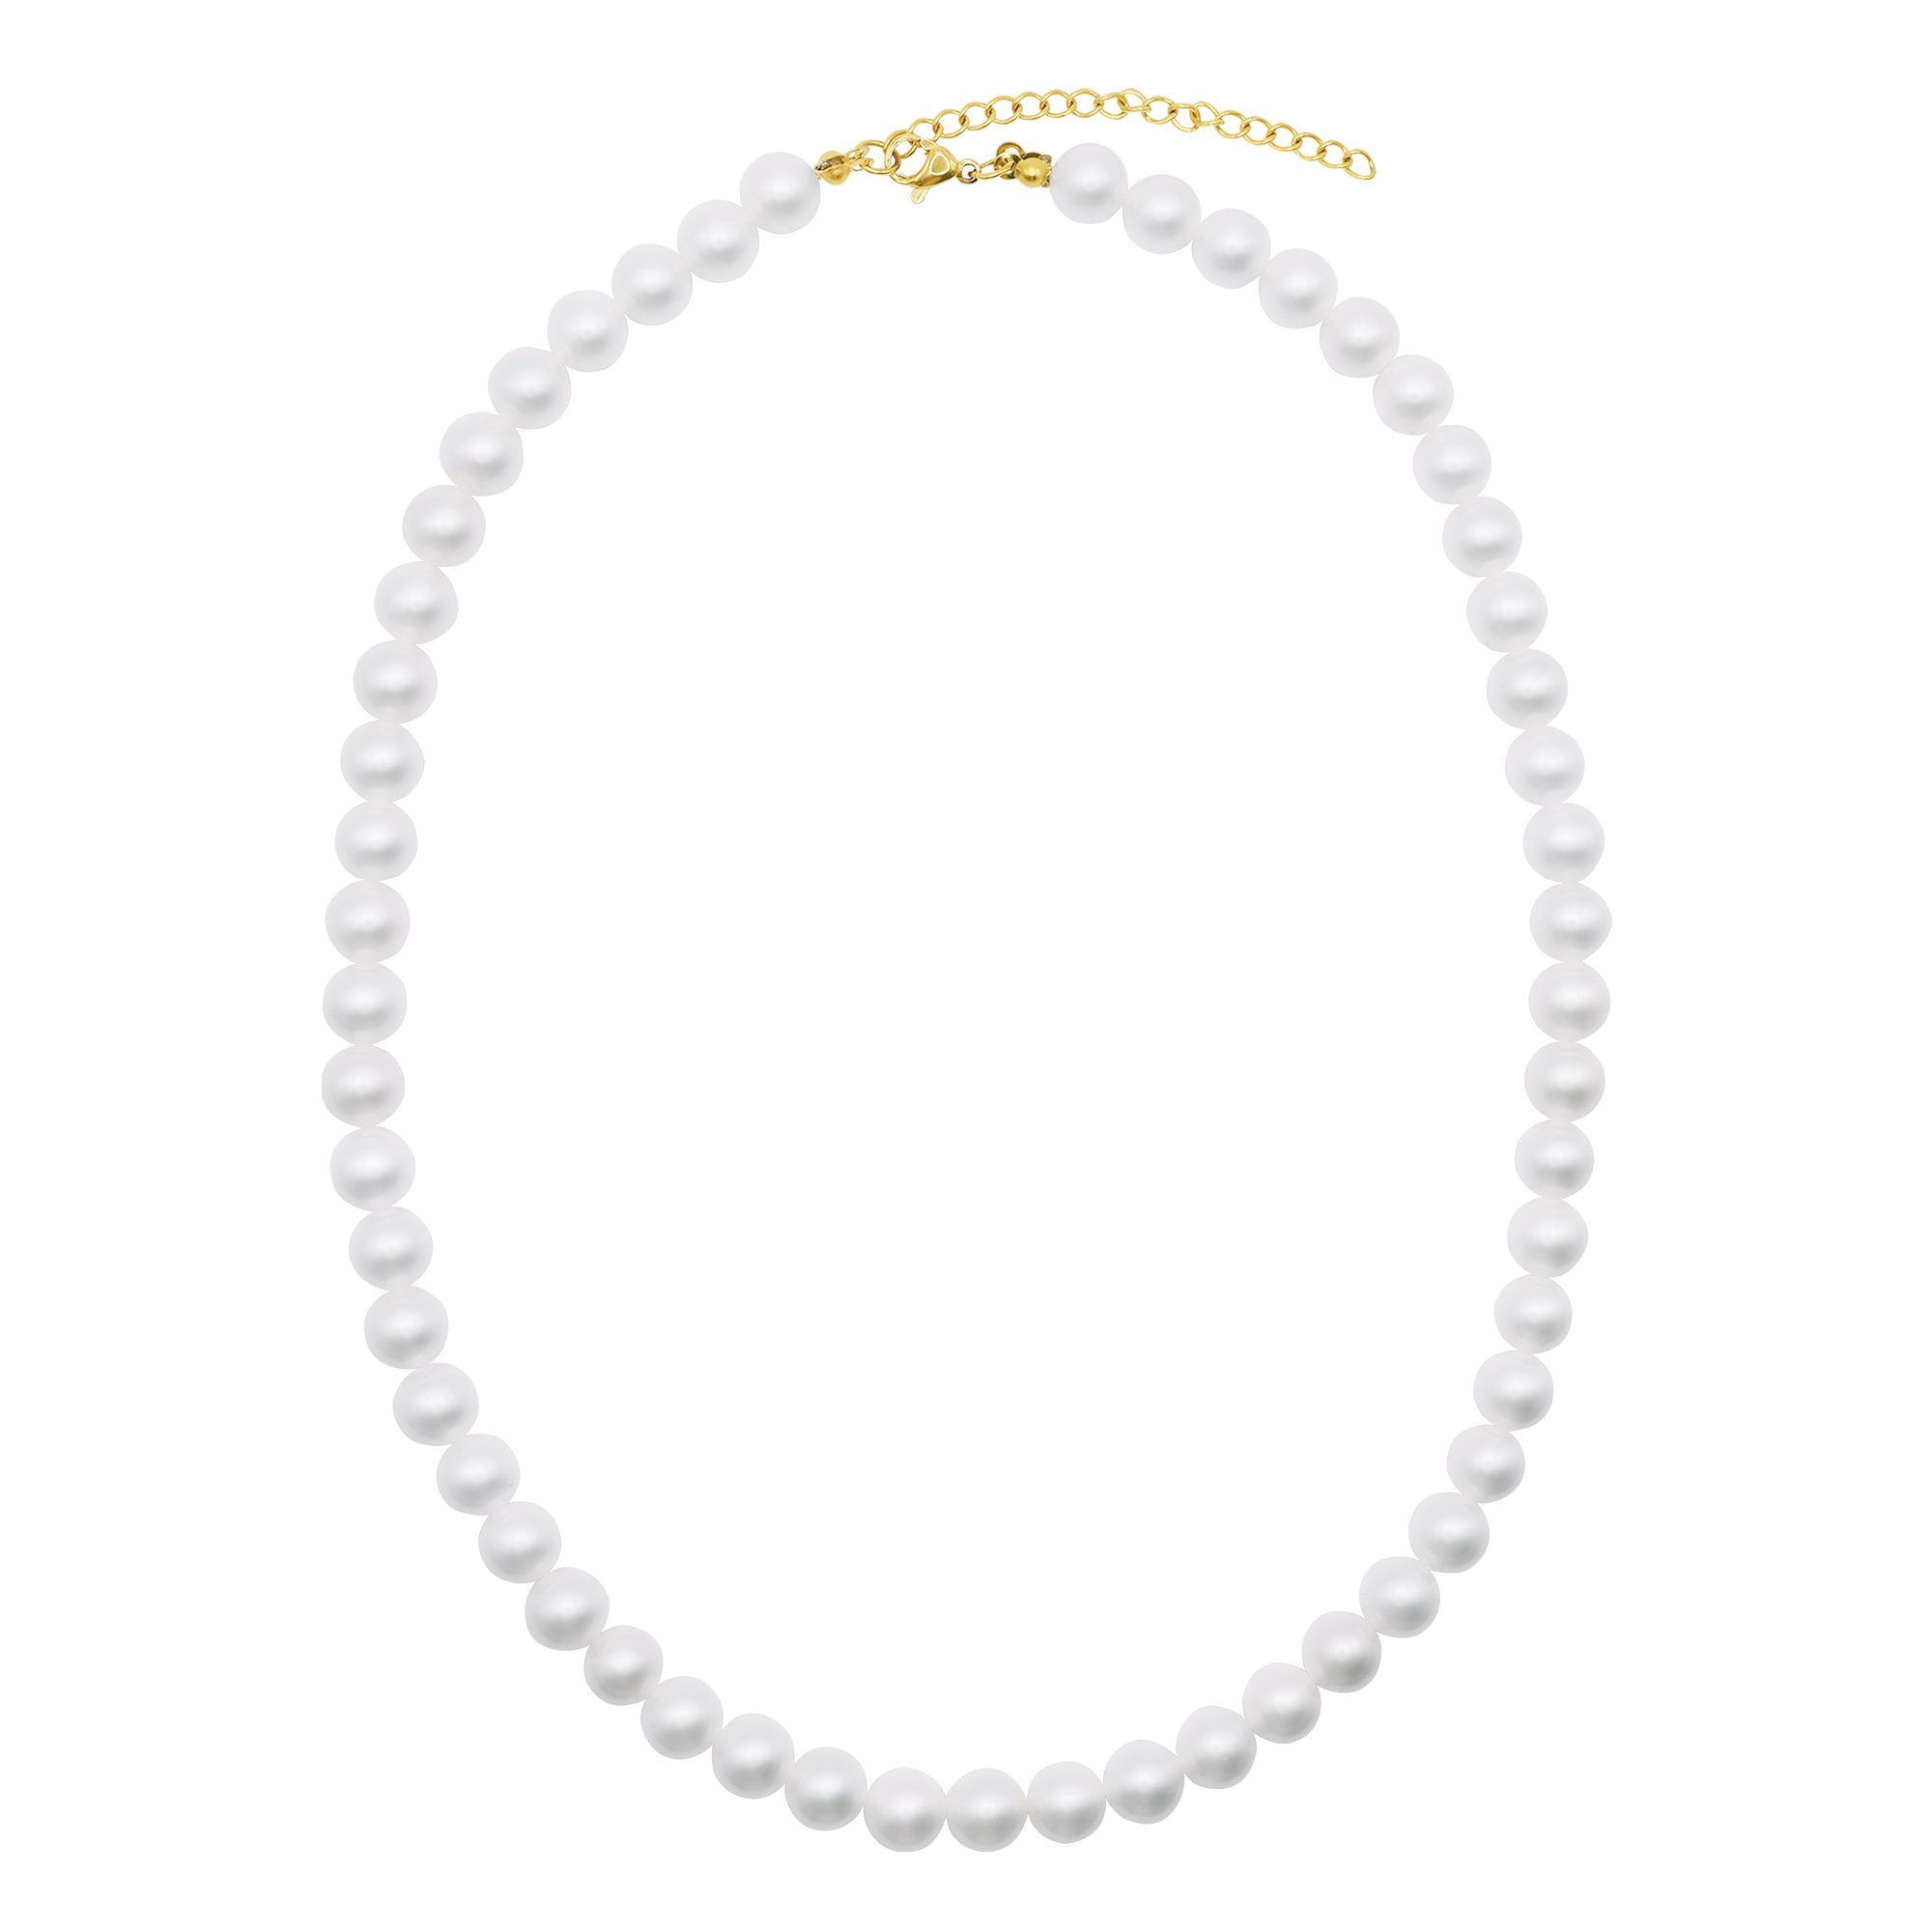 Heideman Collier Perlenkette No. 8 silberfarben glanzmatt (inkl. Geschenkverpackung), Collier mit Perlen weiß oder farbig goldfarben